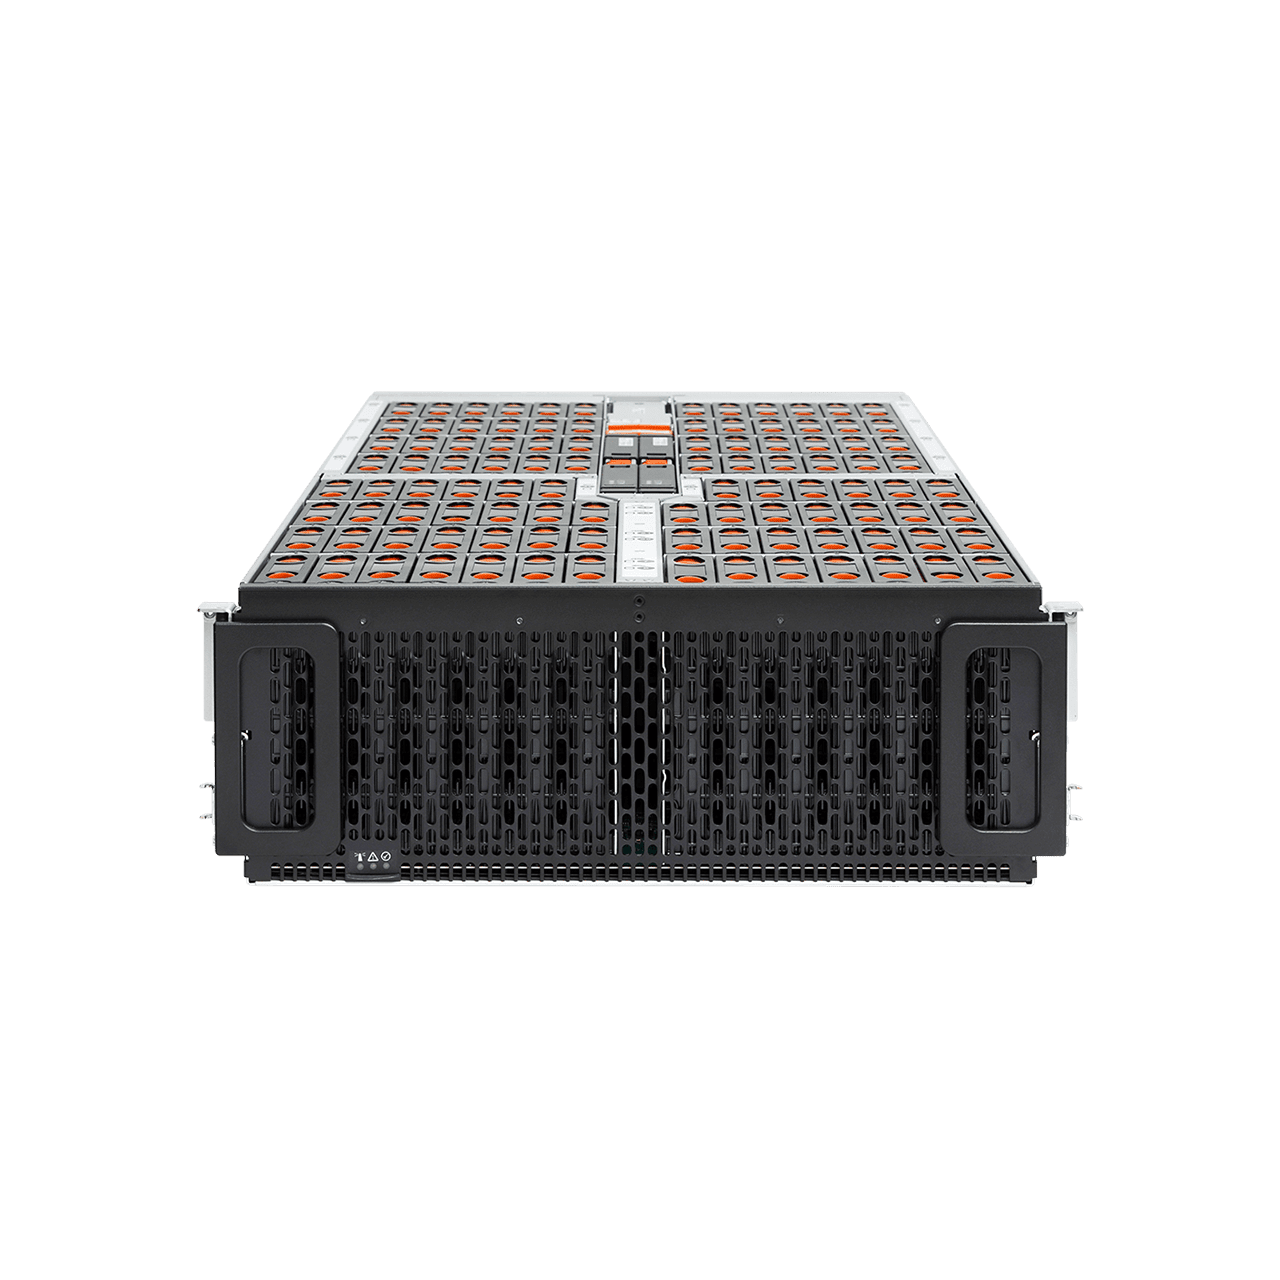 Western Digital Ultrastar Data102 Hybrid Storage Platform SE4U102 | 4U102 102-Bay Data Center JBOD Enclosure | Up to 1.8PB - Front View